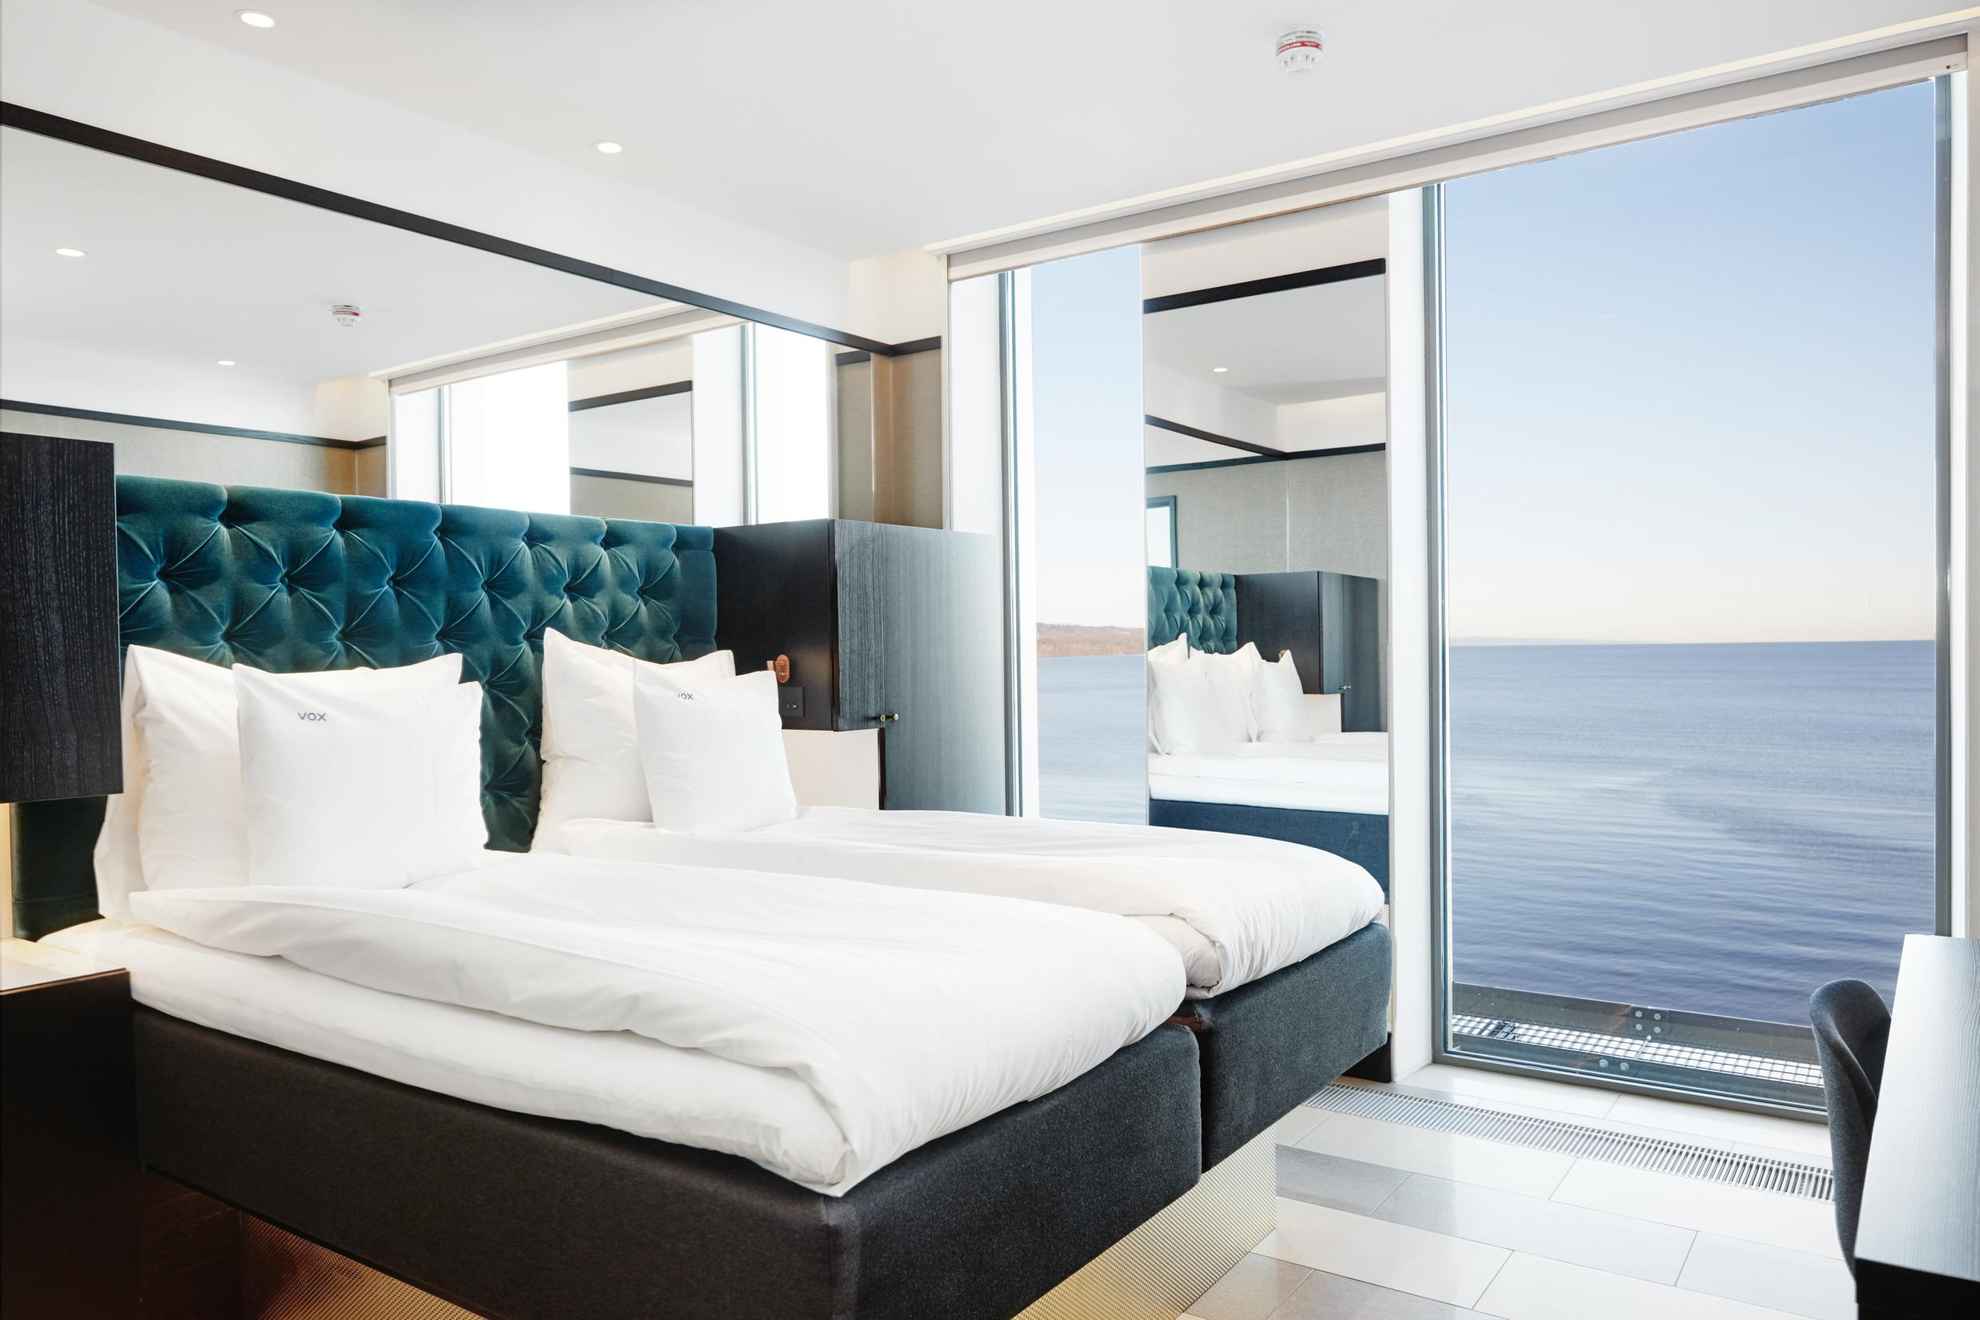 Een hotelkamer met een tweepersoonsbed met witte lakens. De kamer heeft grote ramen met uitzicht op het meer Vättern.